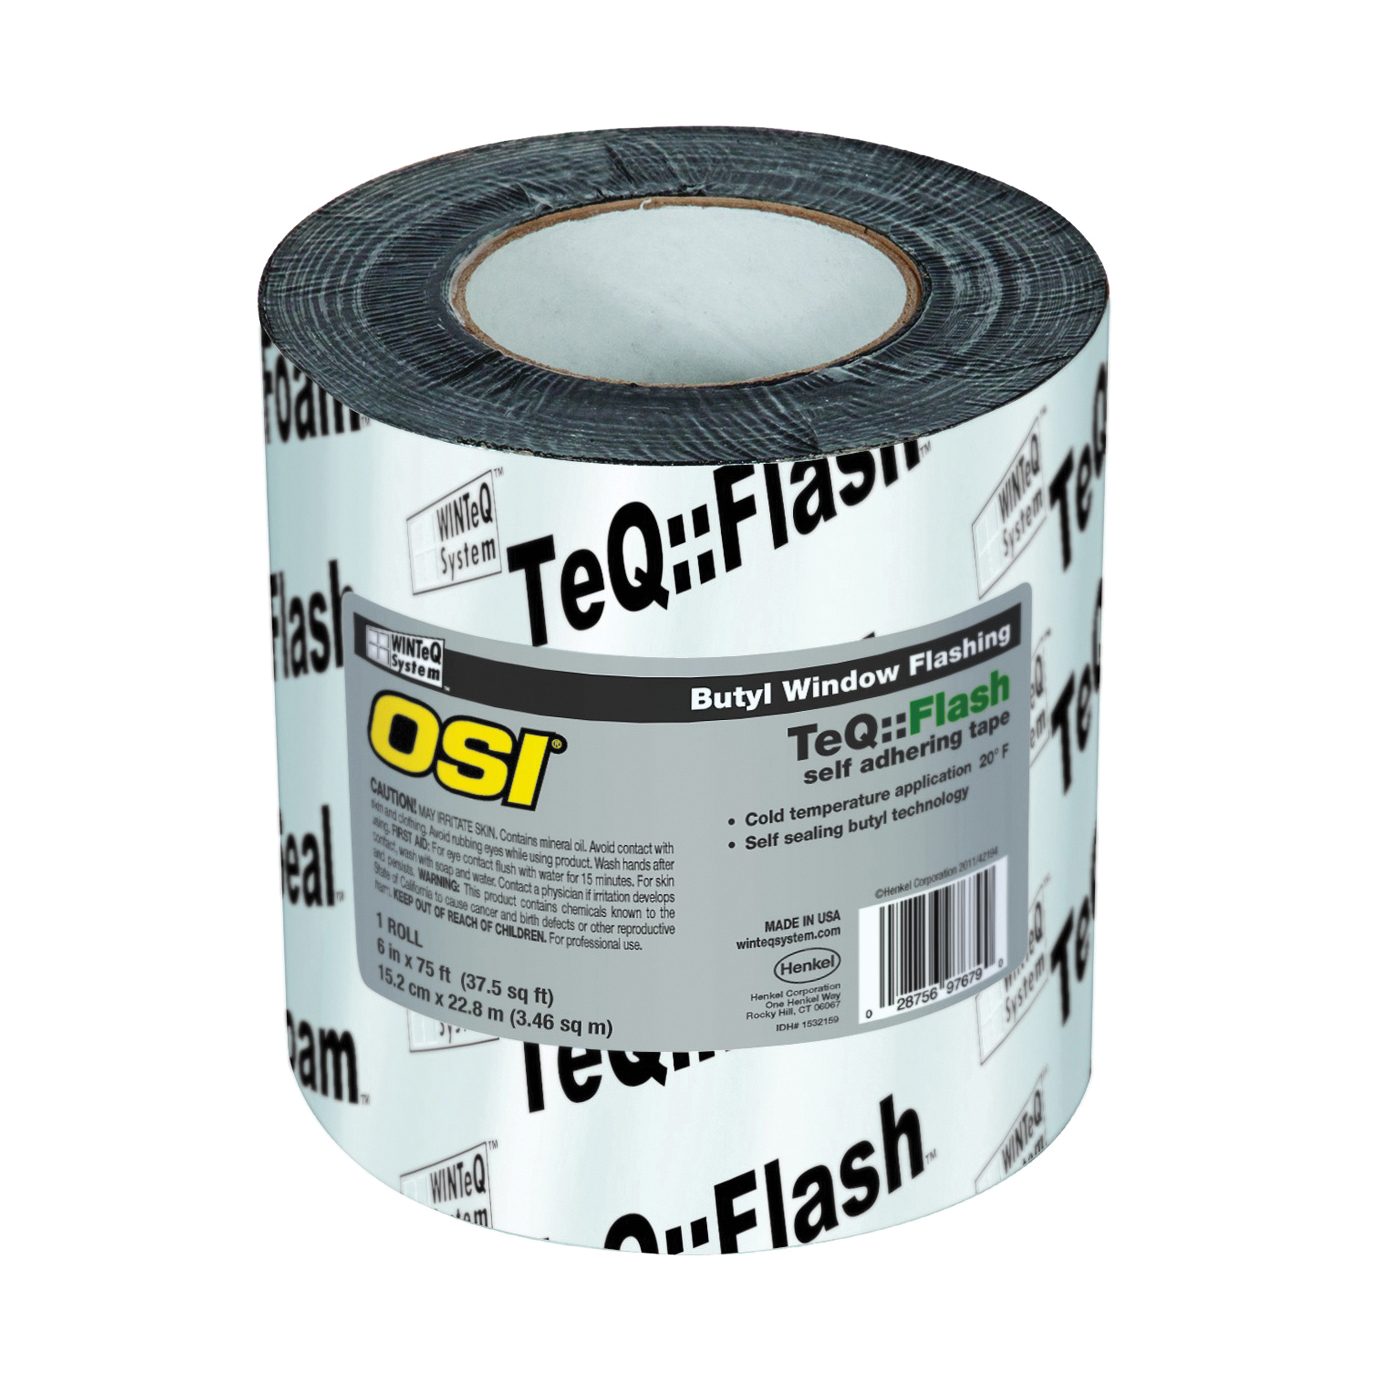 OSI 1532160 Window Flashing Tape, 75 ft L, 9 in W, Black, Self-Adhesive - 1